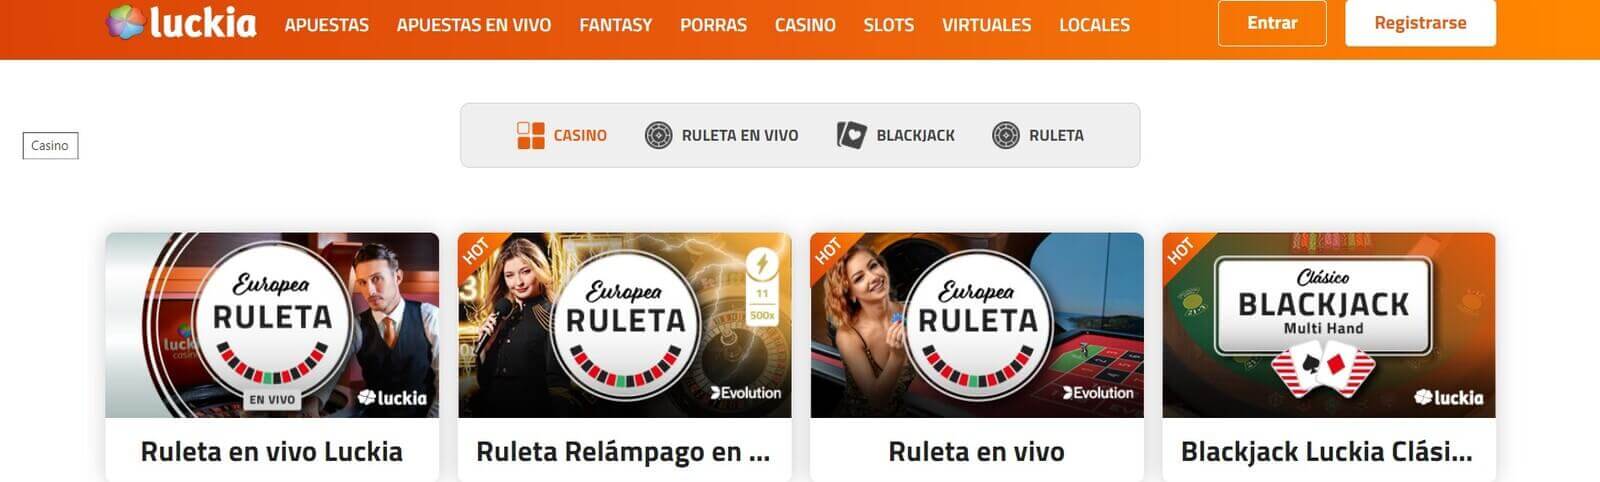 Página web de Luckia Casino